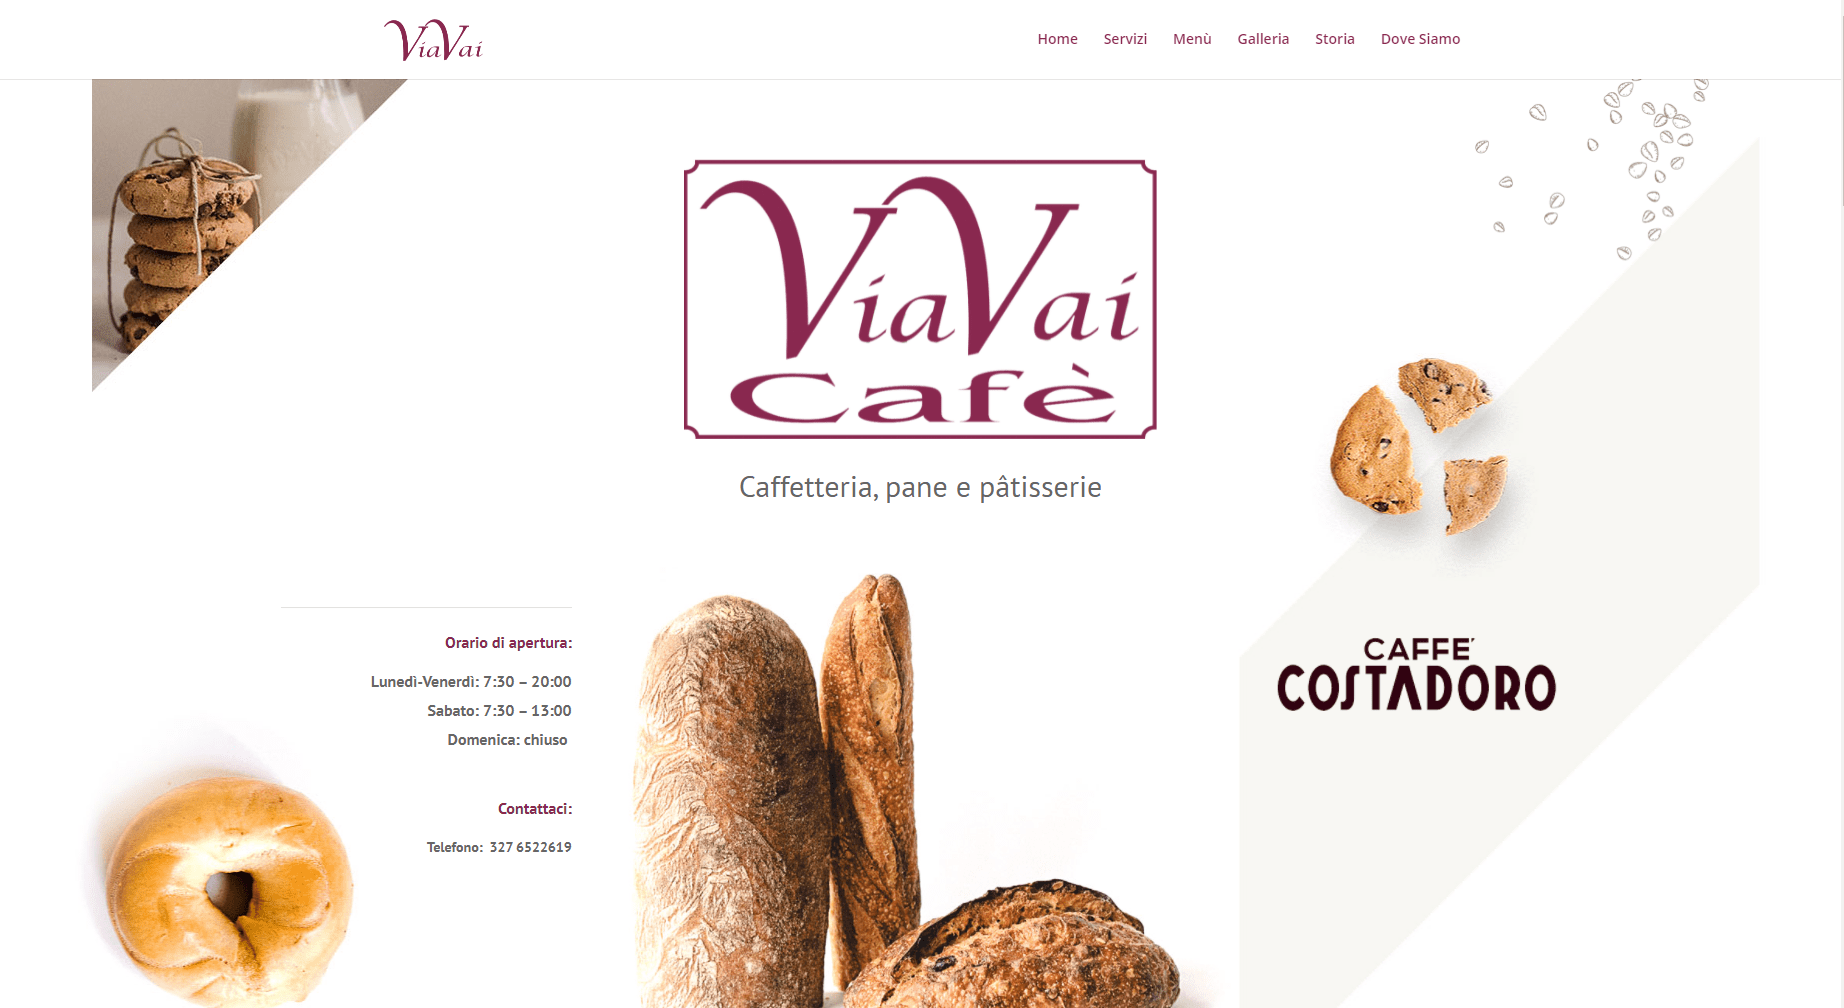 ScreenShot del sito web dell'bar Astigiano ViaVaiCafe visto da computer